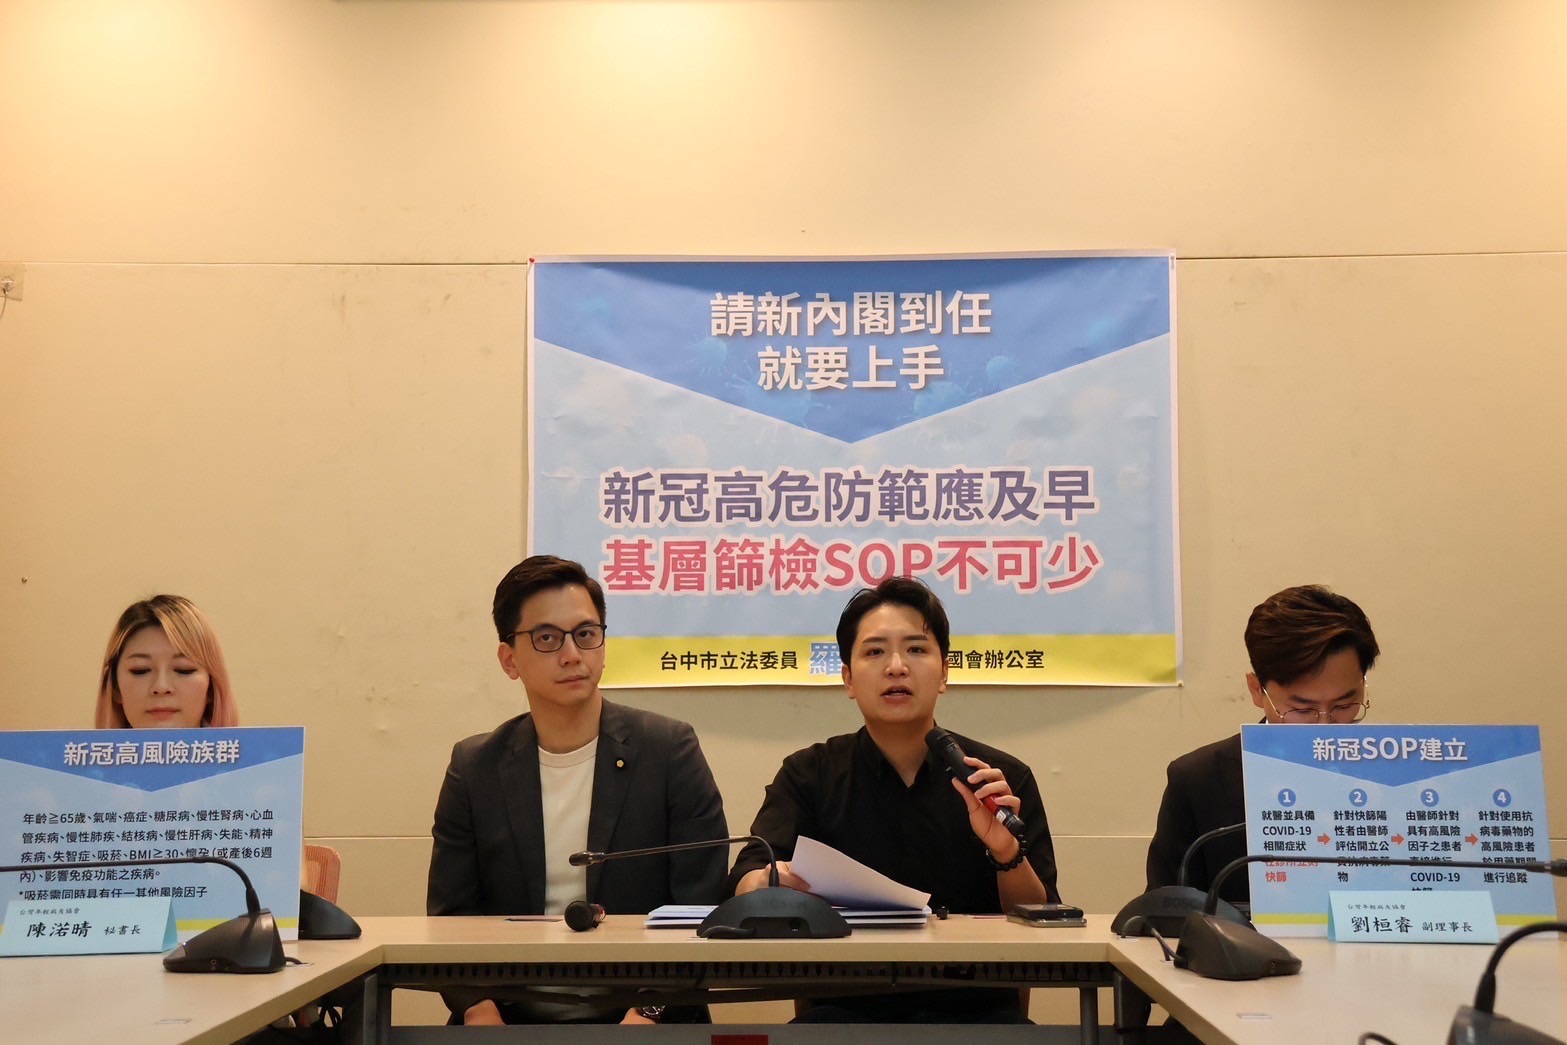 国民党立委罗廷玮（右2）、牛煦庭（右3）等今与台湾年轻病友协会举行记者会，呼吁新内阁要把新冠比照流感，建立SOP，把基层作为拦截轻症的重要伙伴，守护大医院医疗量能。图/罗廷玮办公室提供